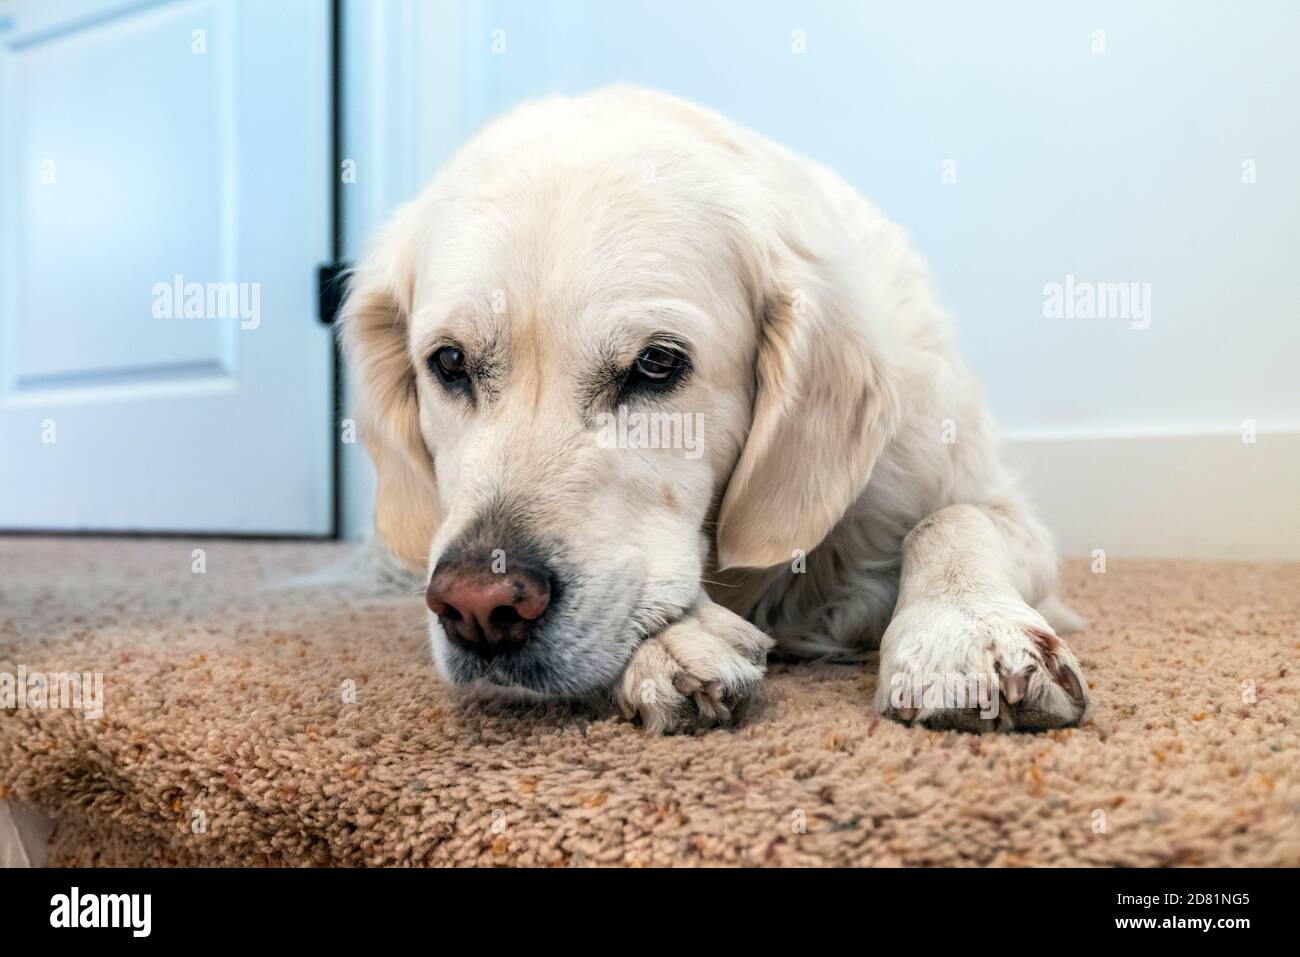 Platinum colored Golden Retriever dog. Stock Photo